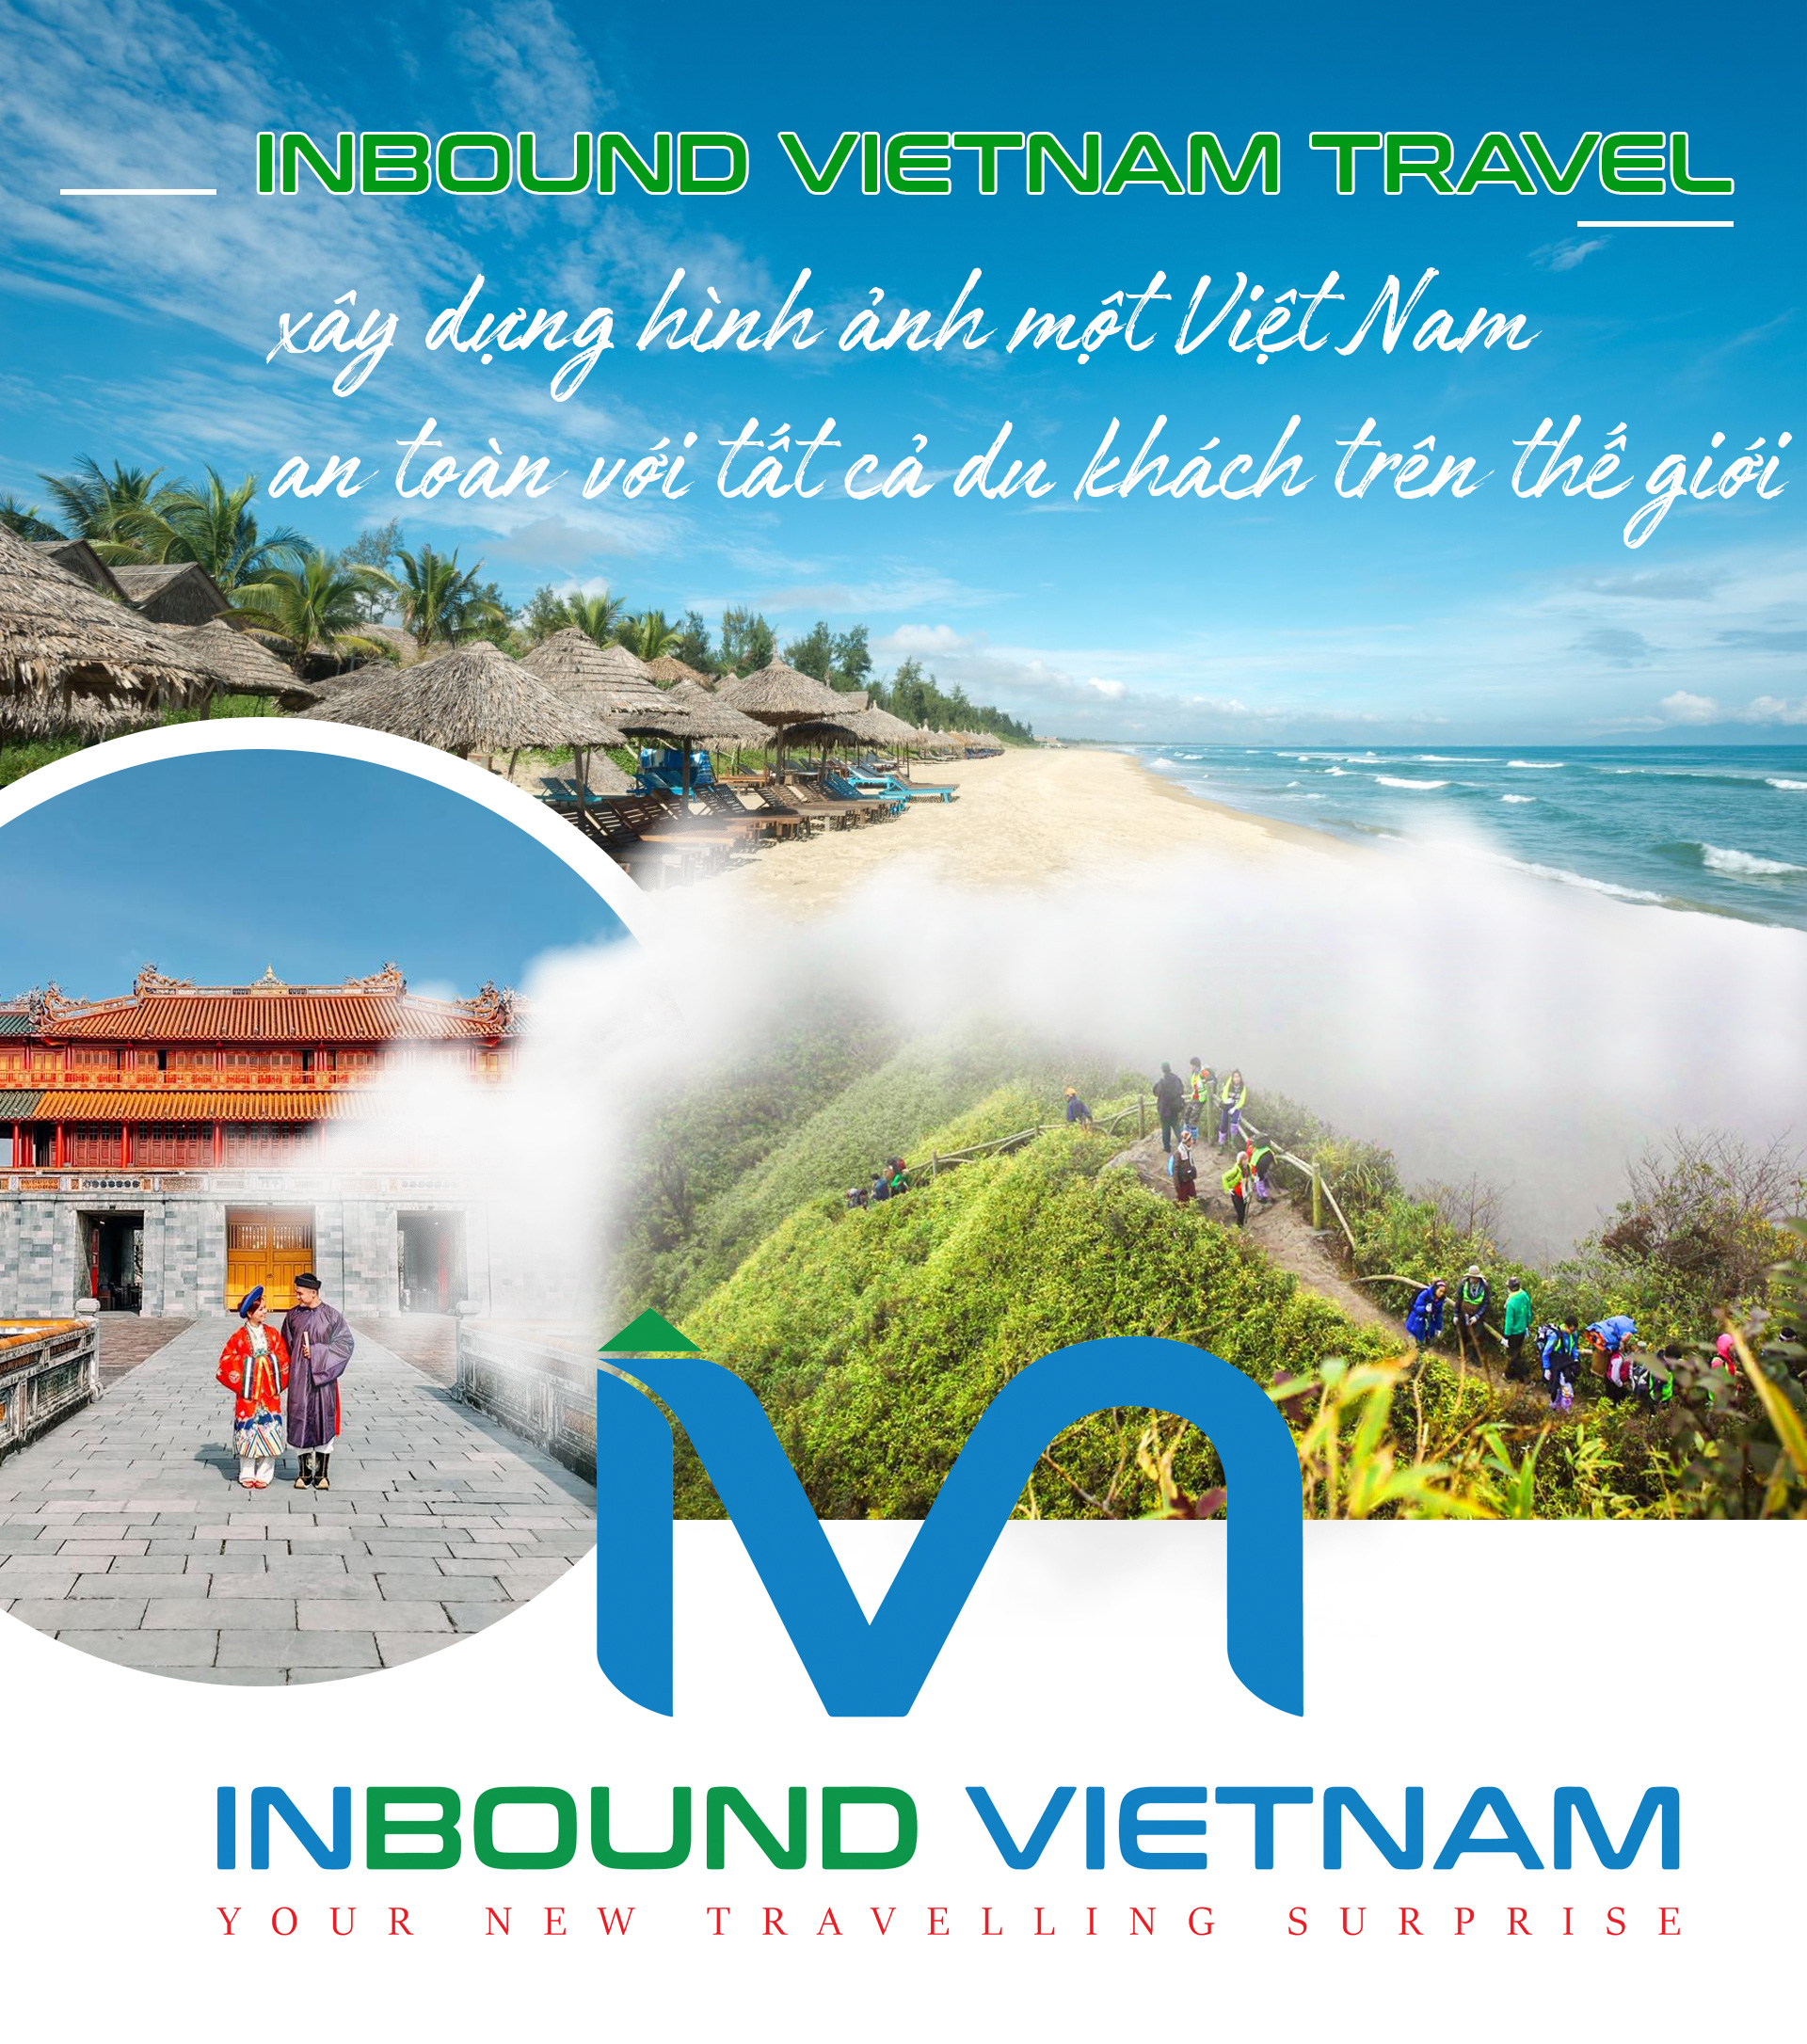 Inbound Vietnam Travel xây dựng hình ảnh một Việt Nam an toàn với tất cả du khách trên thế giới - 1